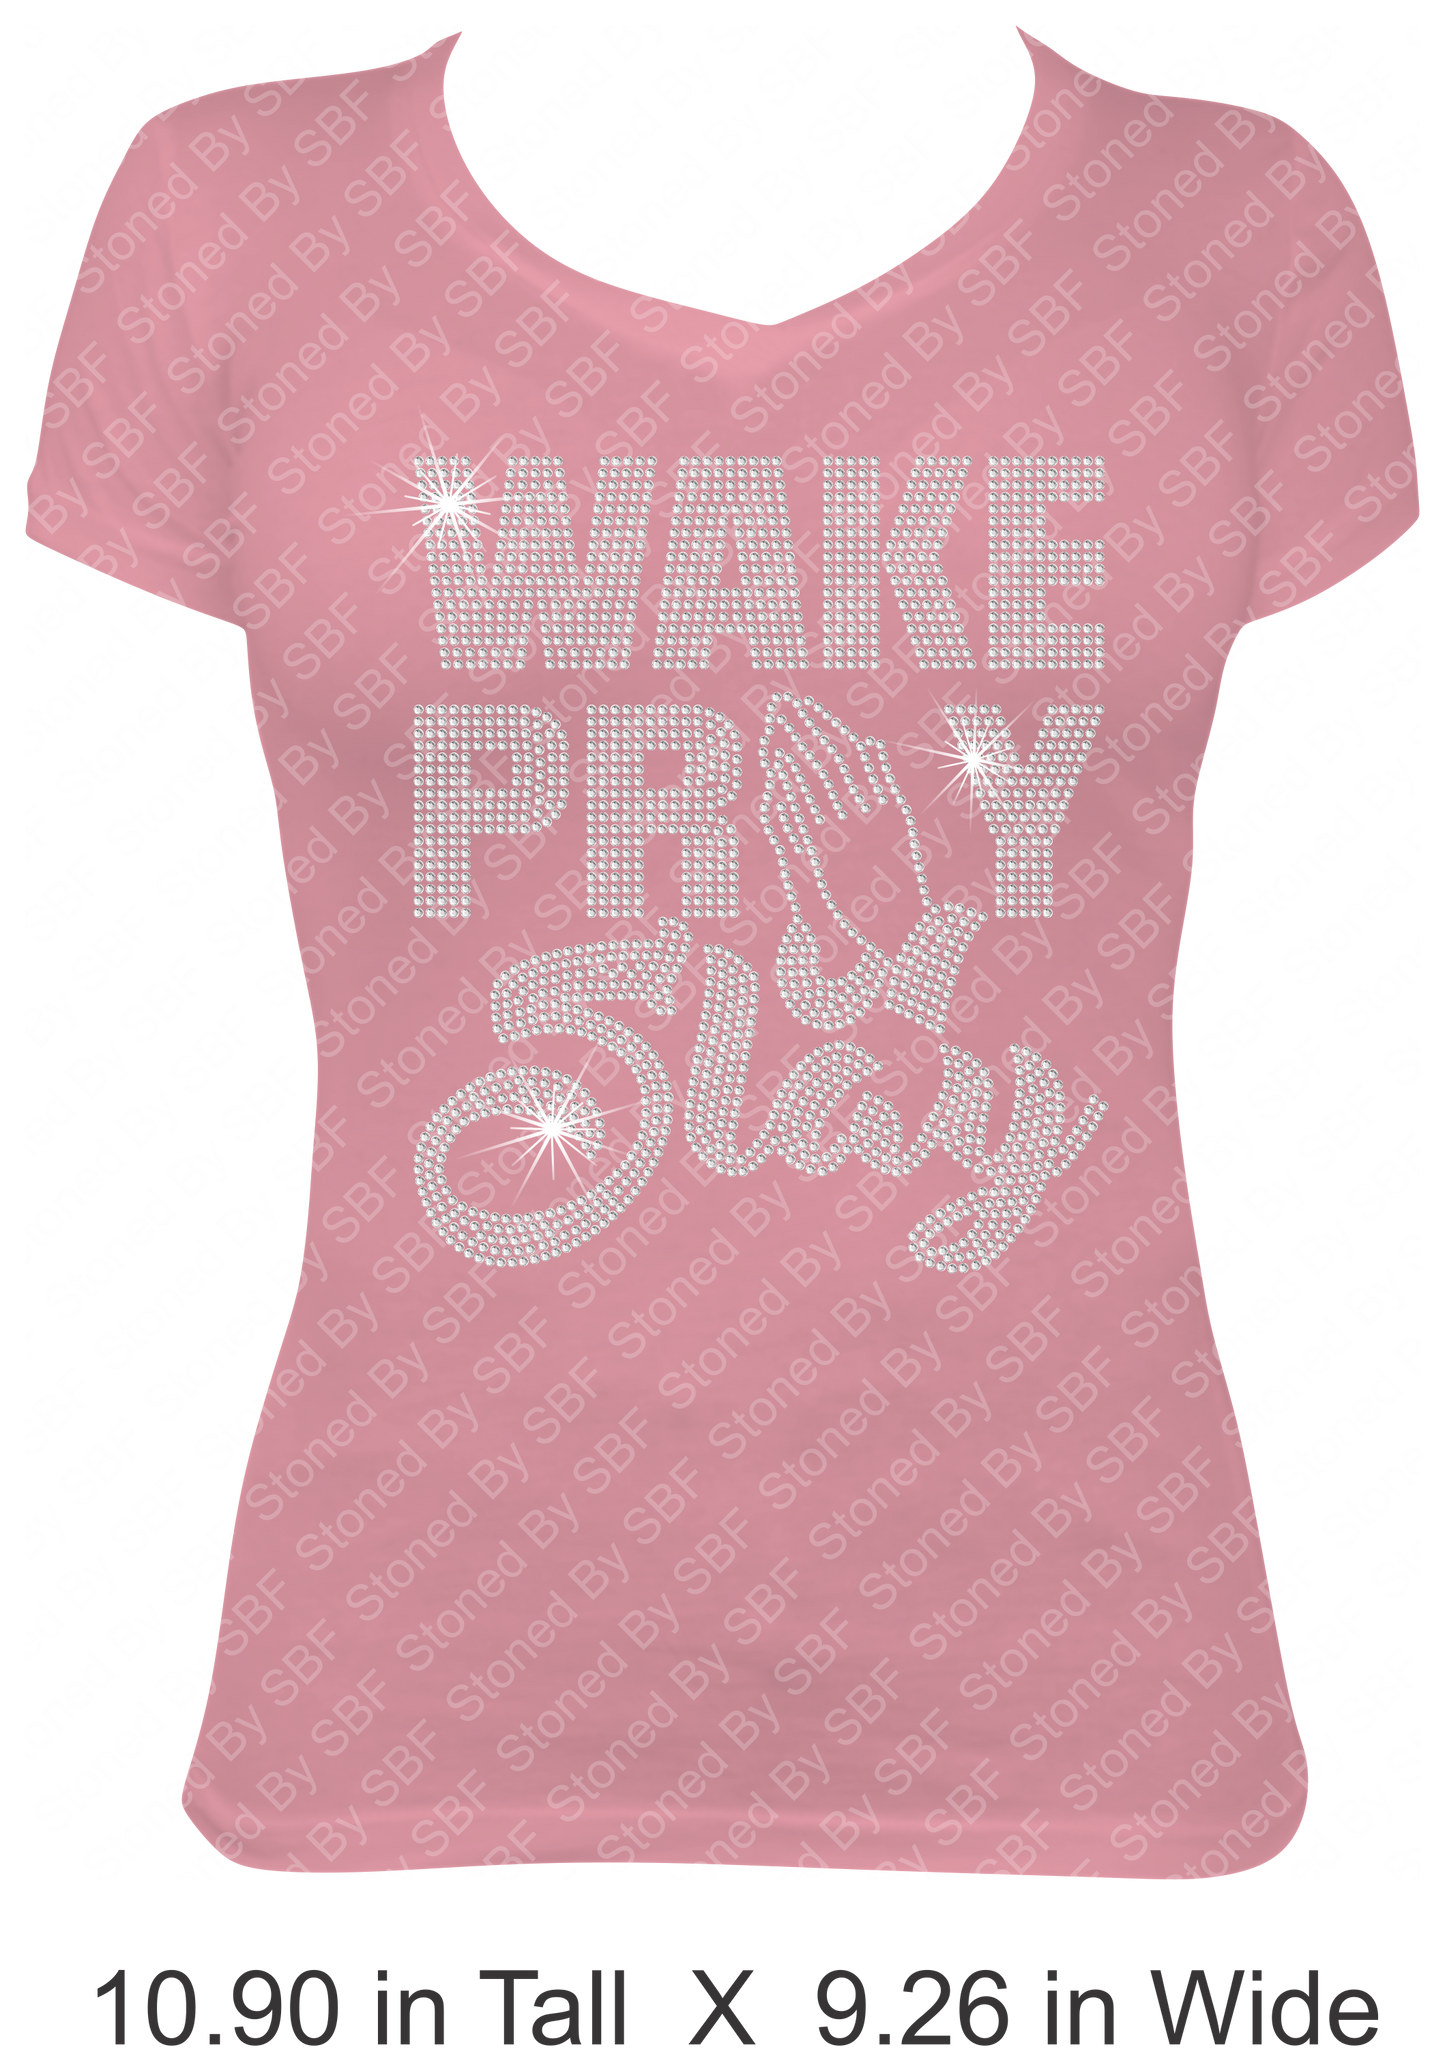 Wake, Pray, Slay